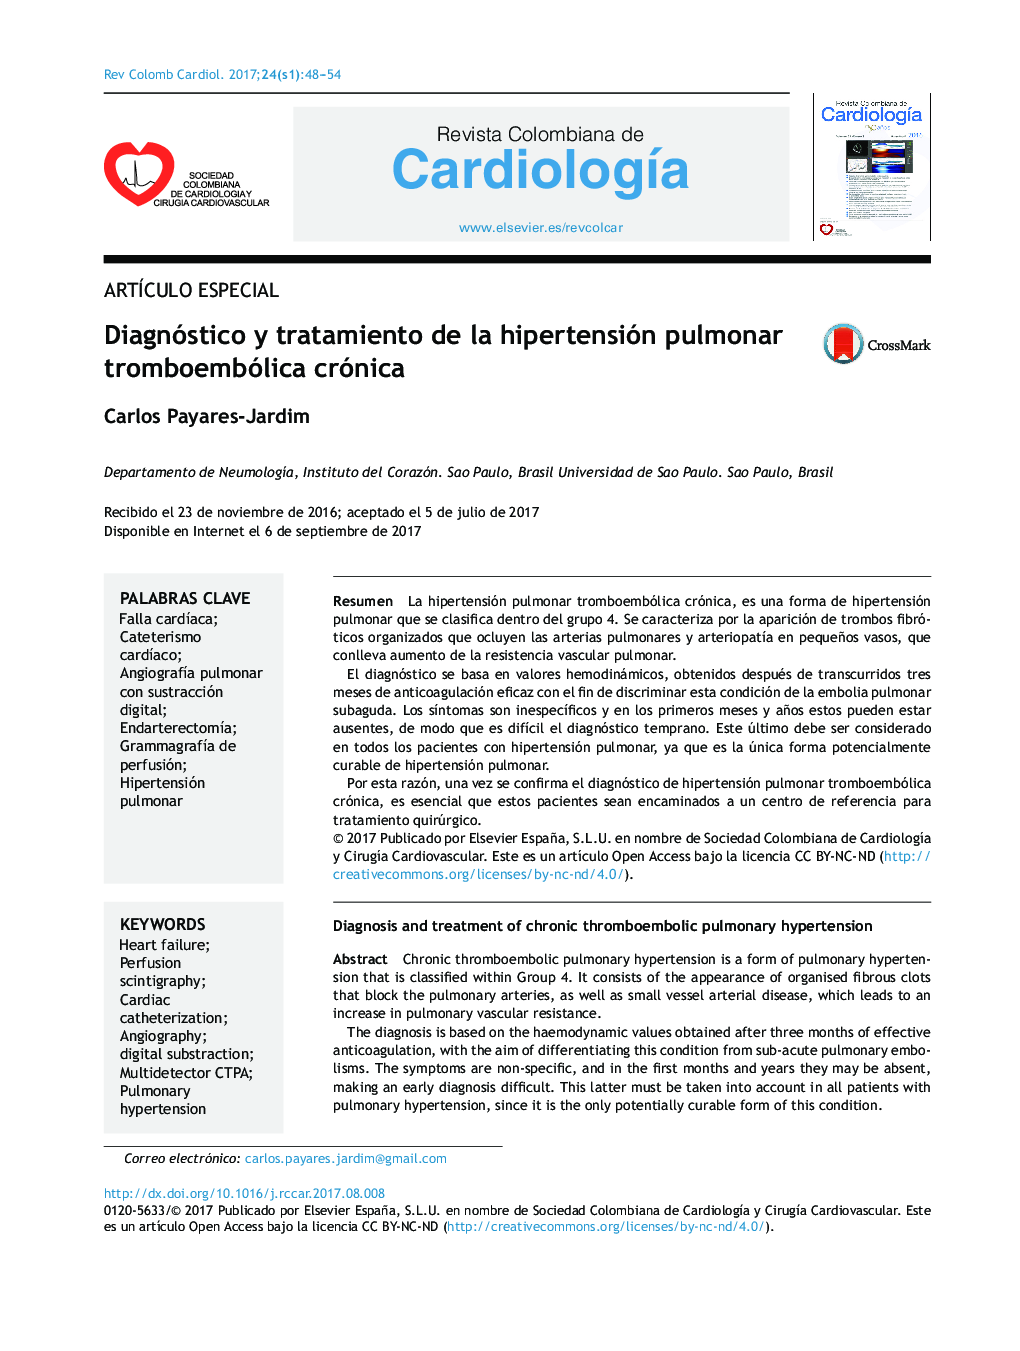 Diagnóstico y tratamiento de la hipertensión pulmonar tromboembólica crónica